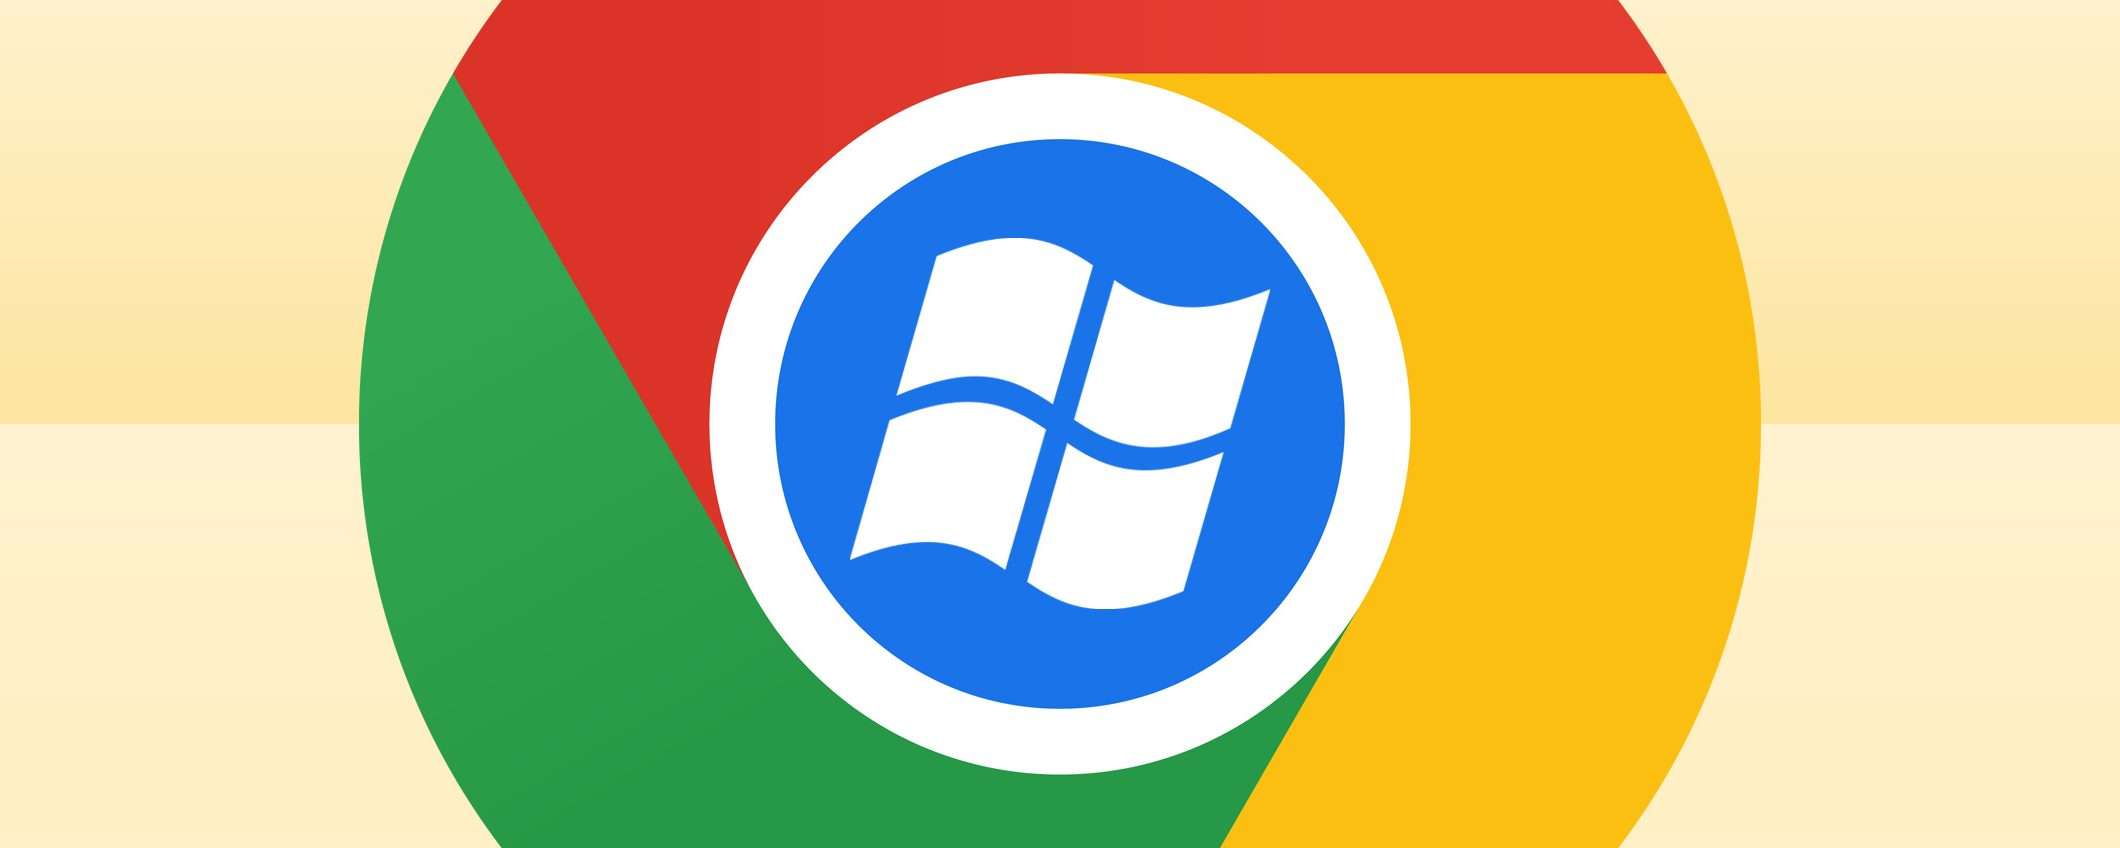 Chrome su Windows 7 e 8.1: la data dello stop